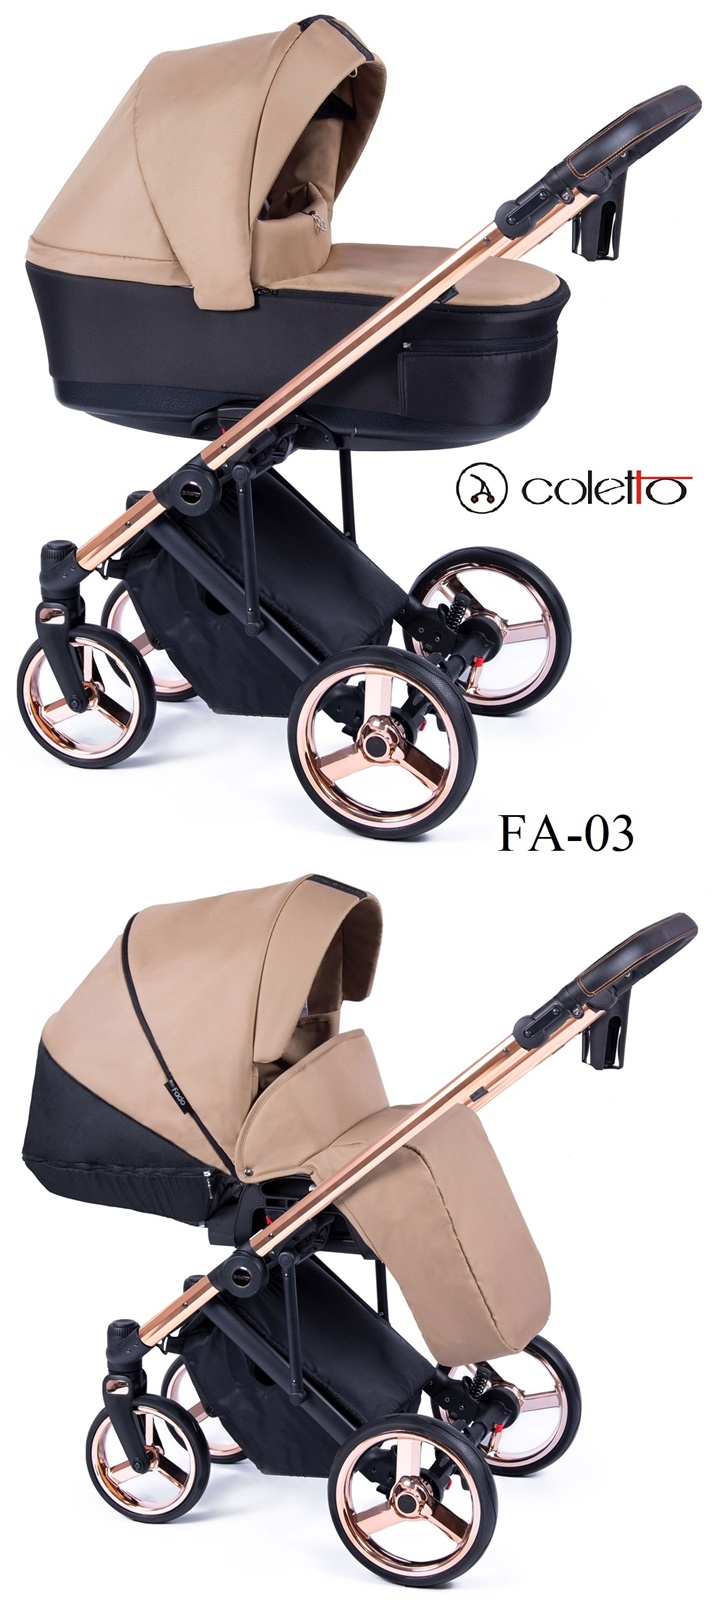 Coletto Fado - wózek 2w1 - gondola i spacerówka beżowe 03 miedziany stelaż